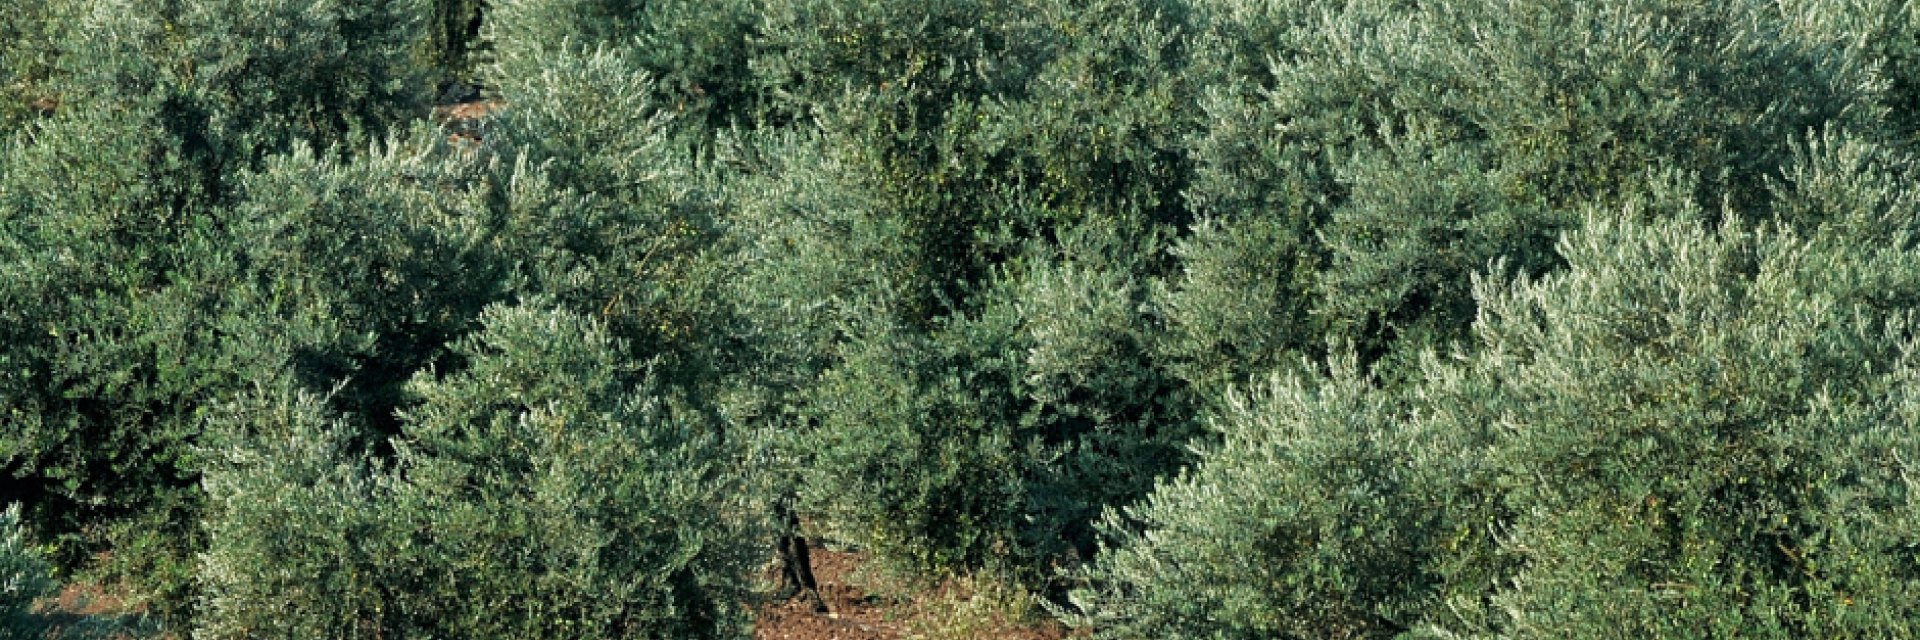 Paesaggio di ulivi